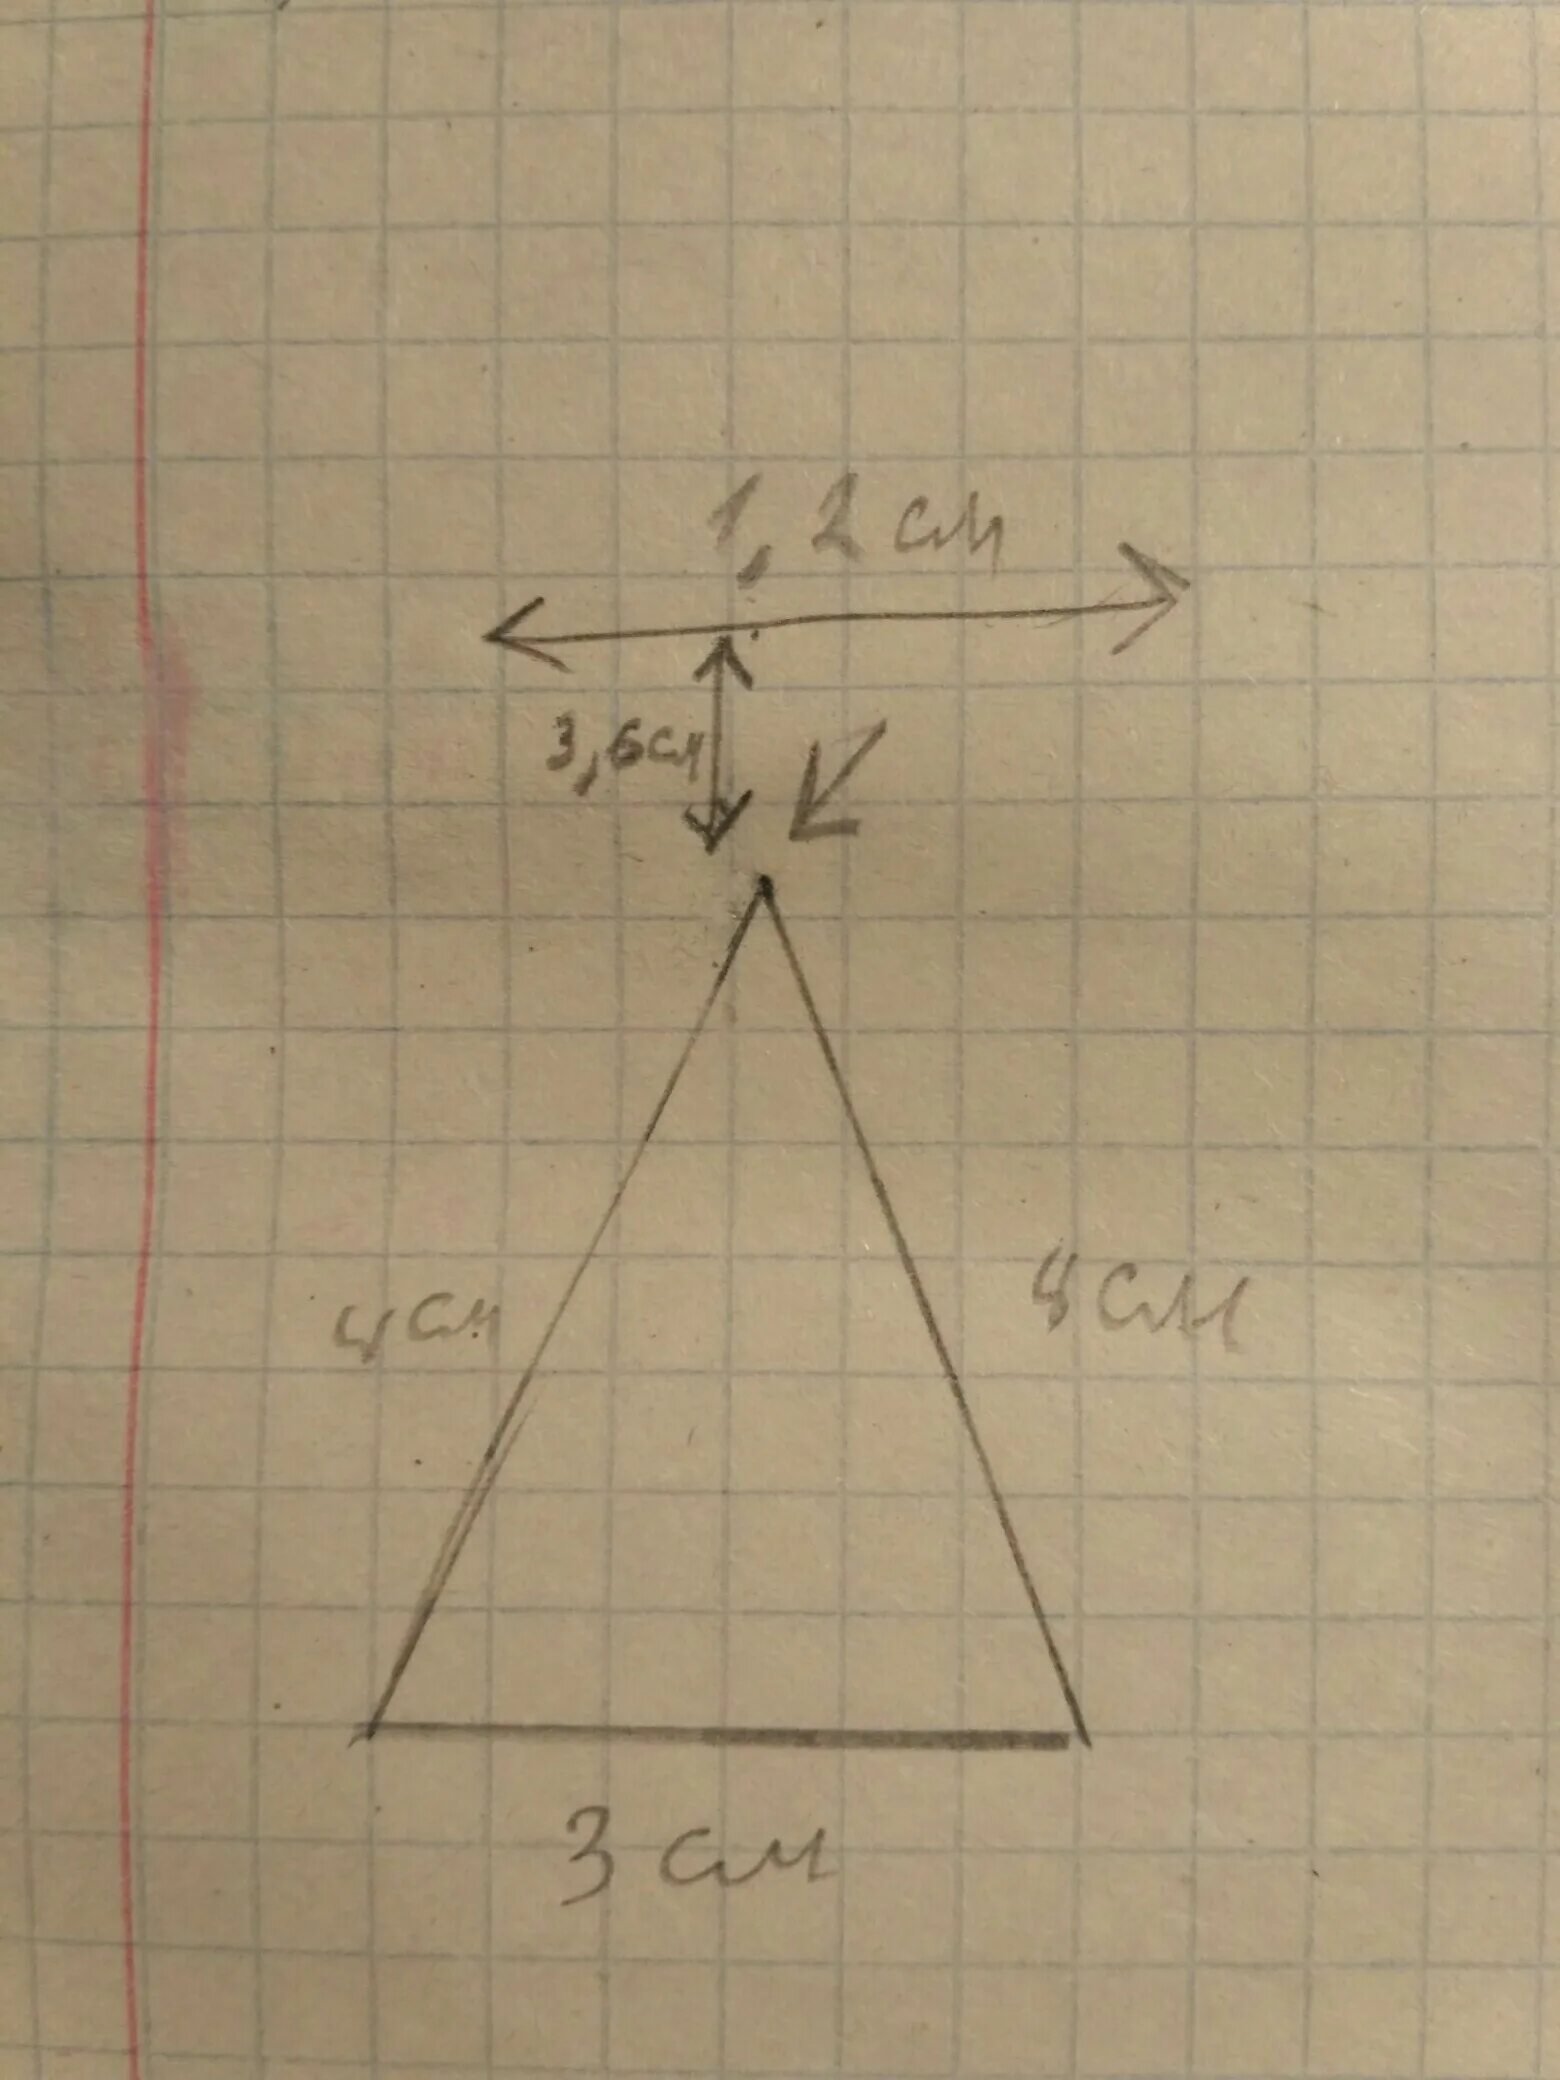 Треугольник со сторонами 2 см. С помощью циркуля и линейки постройте треугольник со сторонами 3 см. С помощью циркуля и линейки построить треугольник со сторонами. С помощью циркуля и линейки постройте треугольник со сторонами. С помощью циркуля и линейки постройте треугольник со сторонами 4 см.